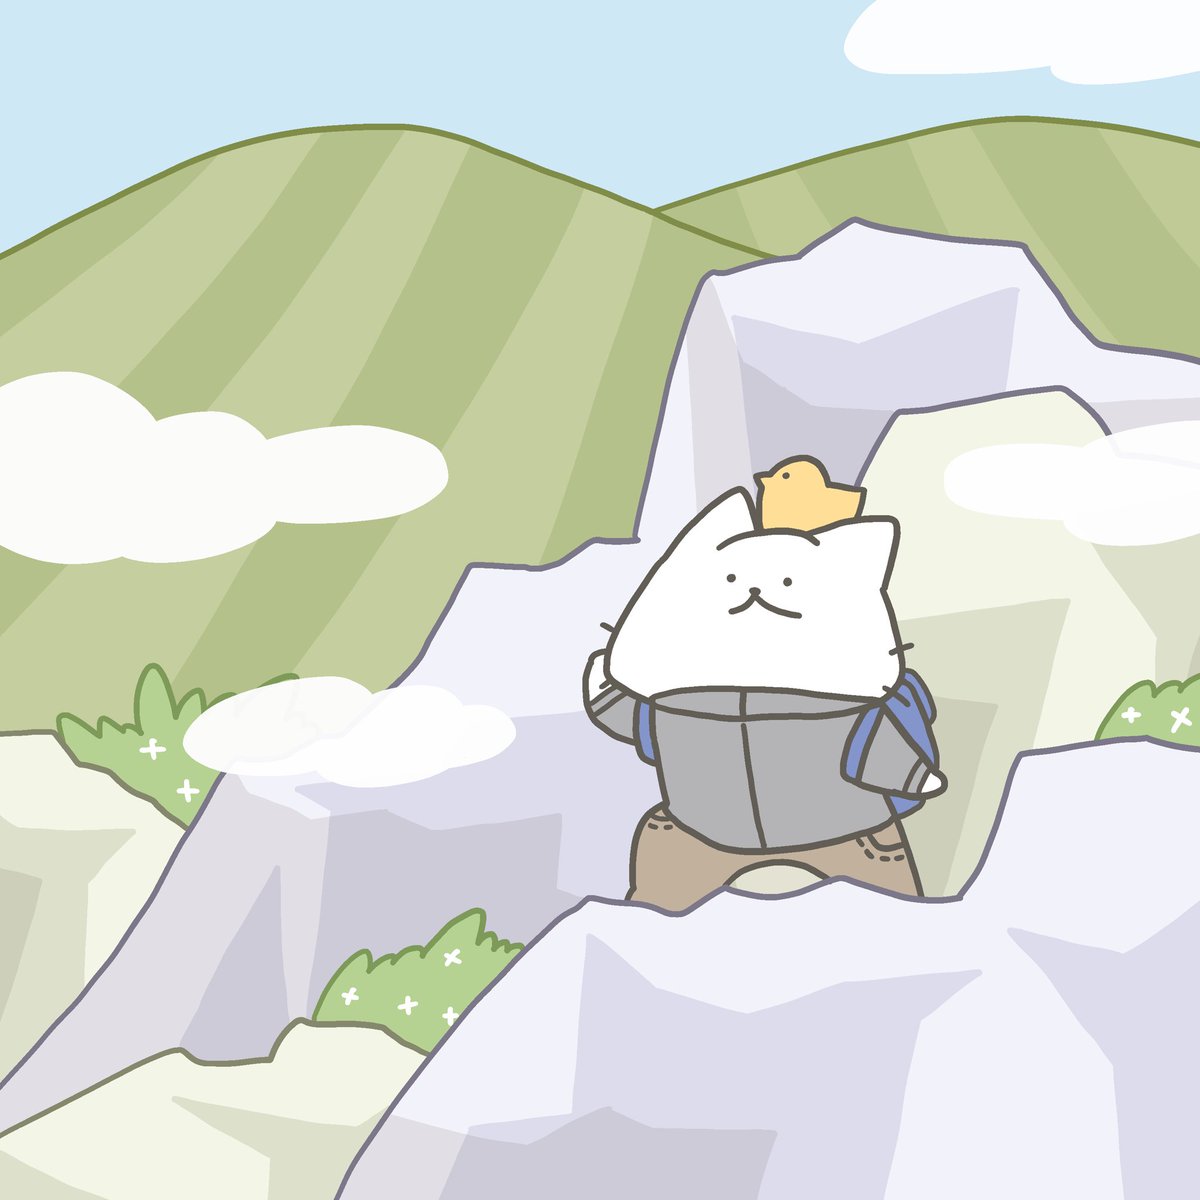 「今日は登山の日! やっほーฅ^>ω<^ฅ」|猫原のしのイラスト